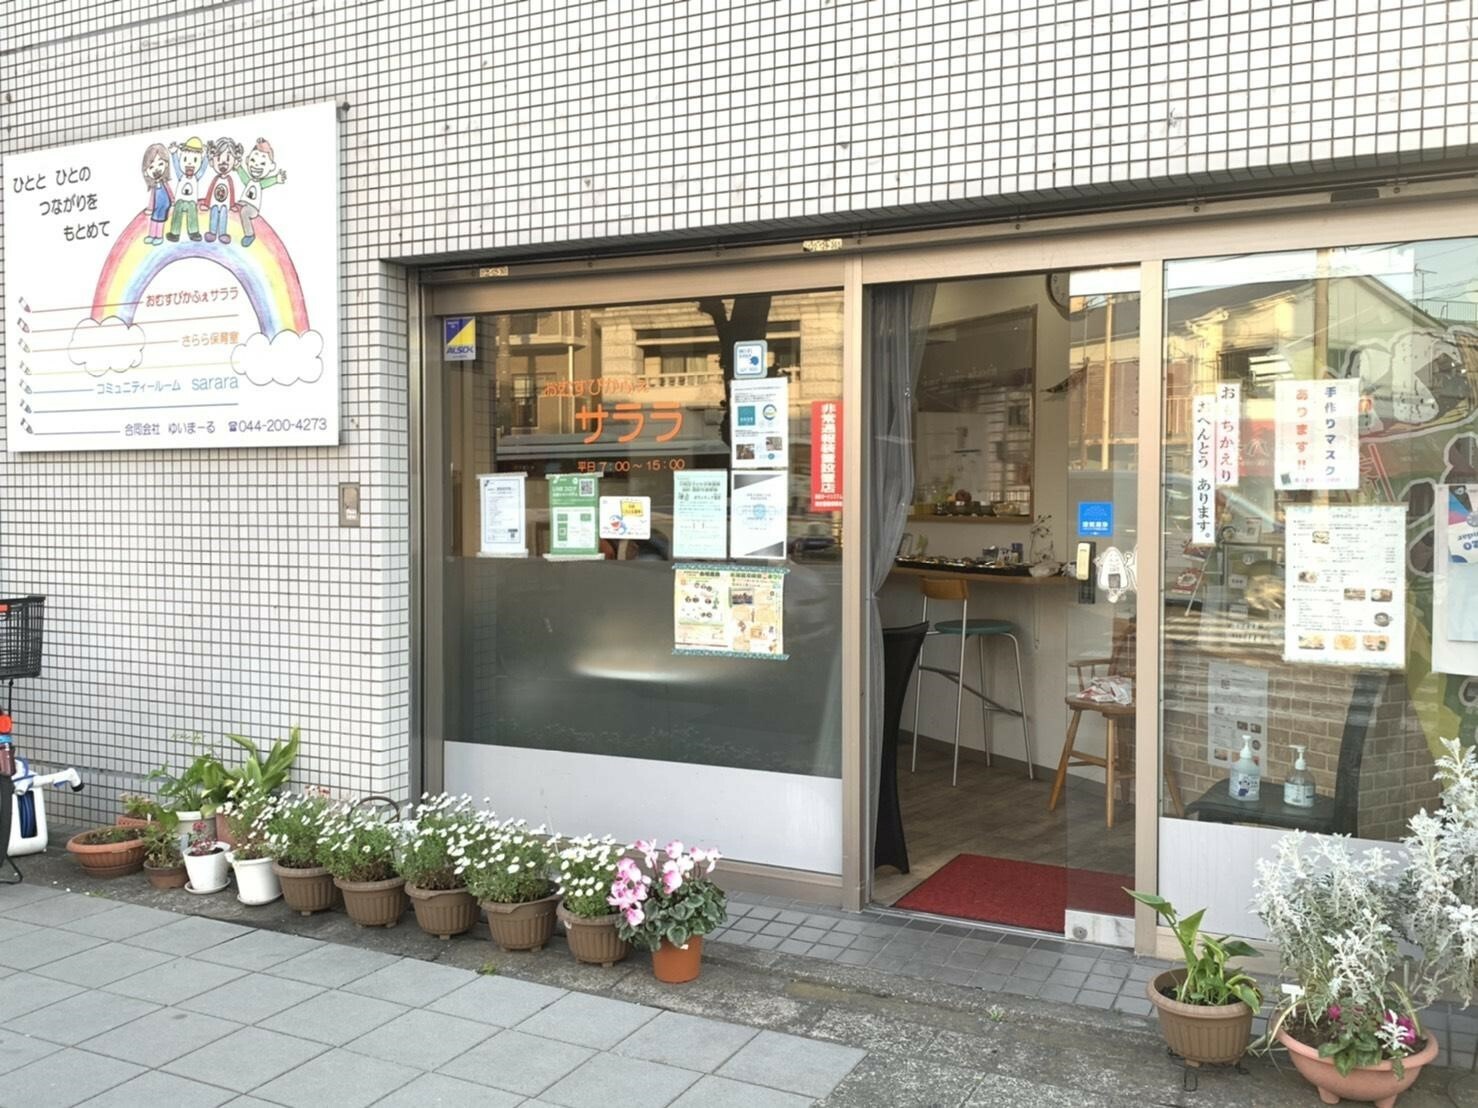 川崎区浜町の小さなカフェ「おむすびかふぇサララ」。サララは韓国語で「生きなさい」という意味の言葉